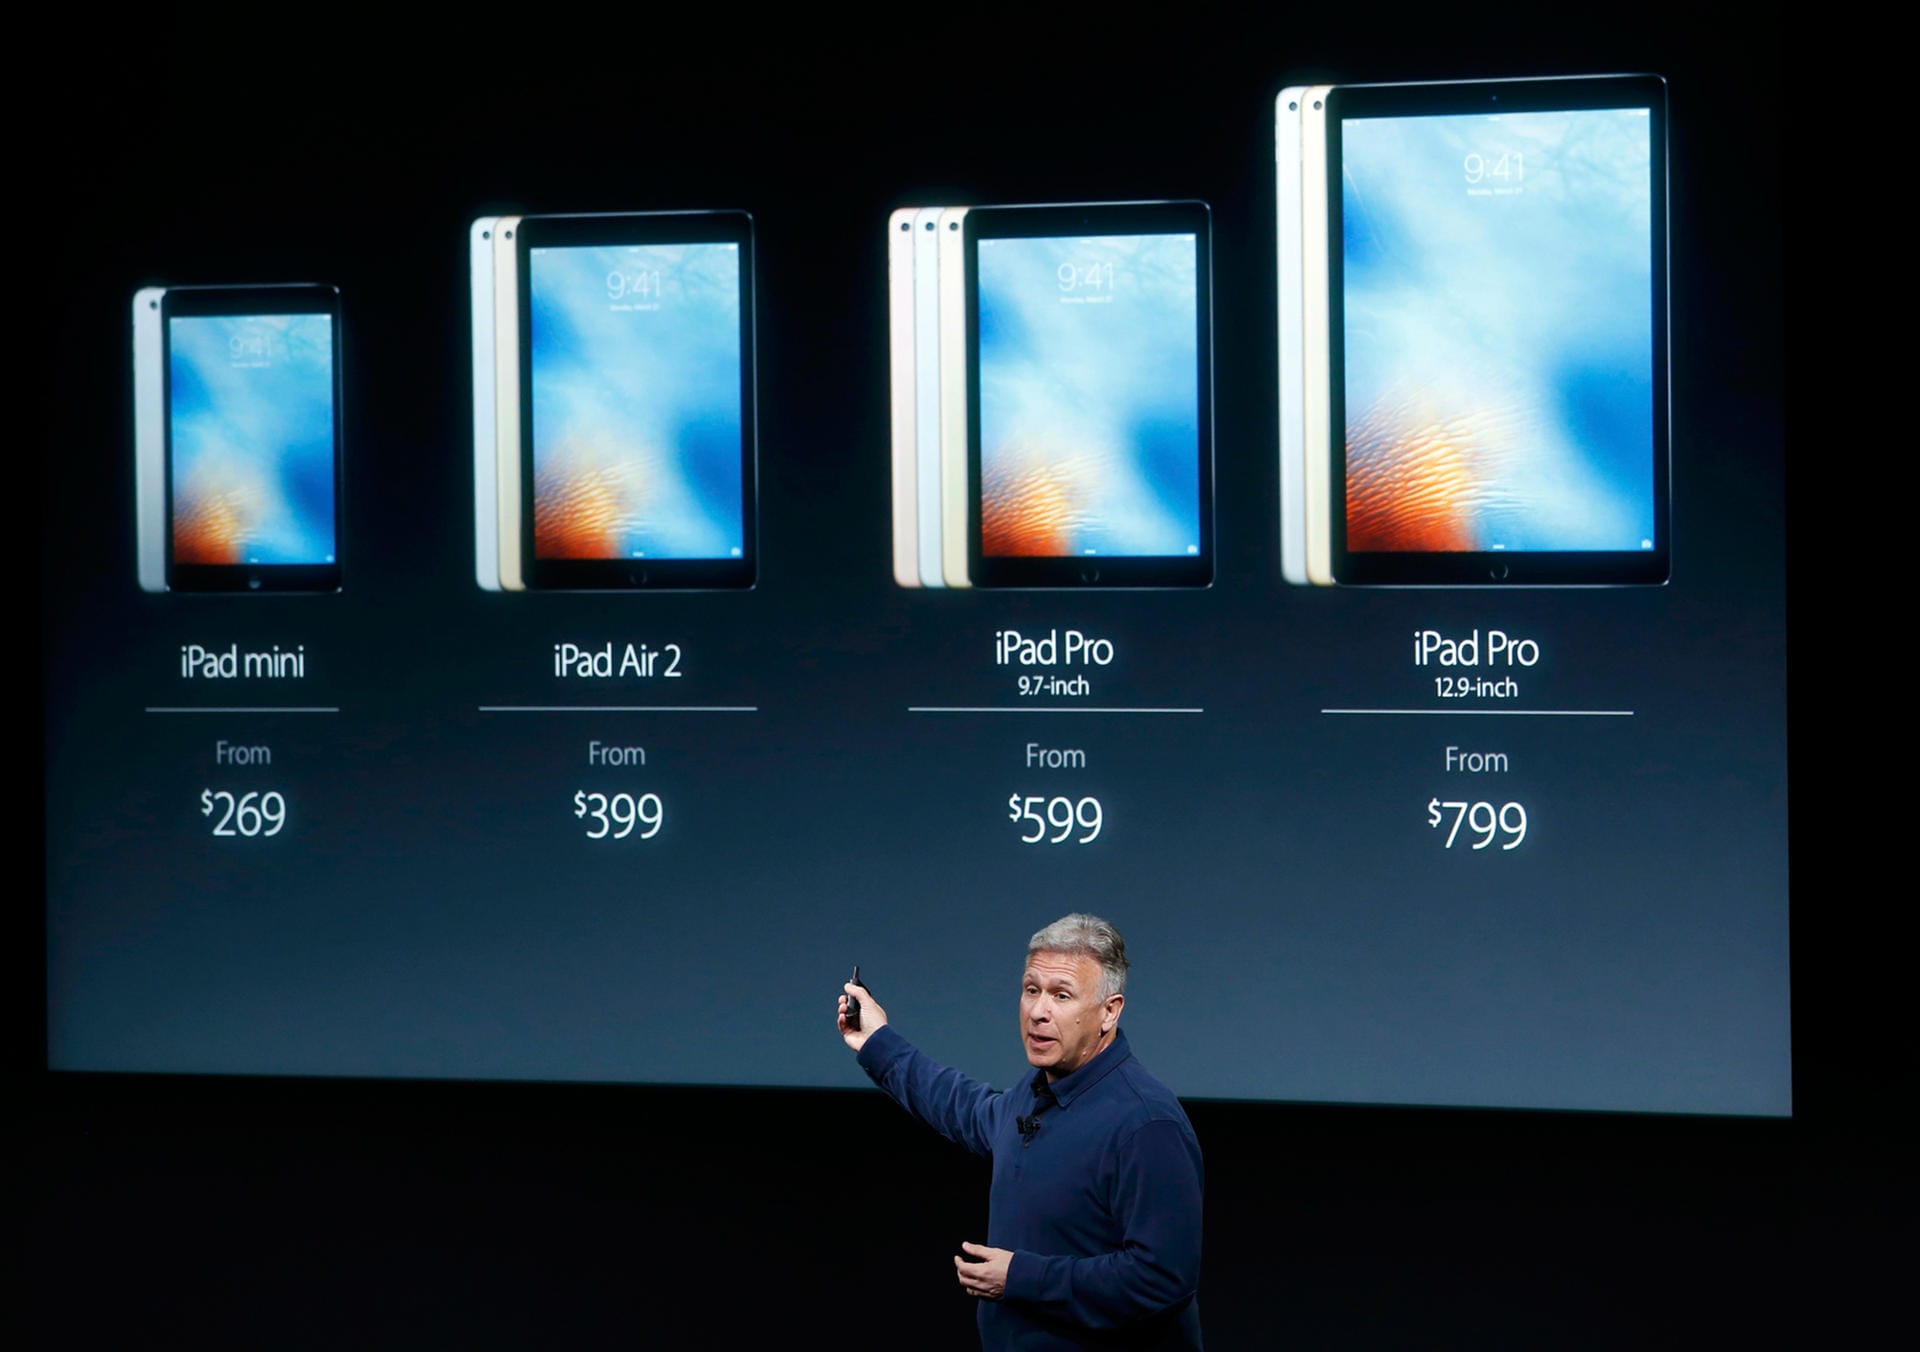 So sieht das Produktsortiment der Apple-Tablets jetzt aus.